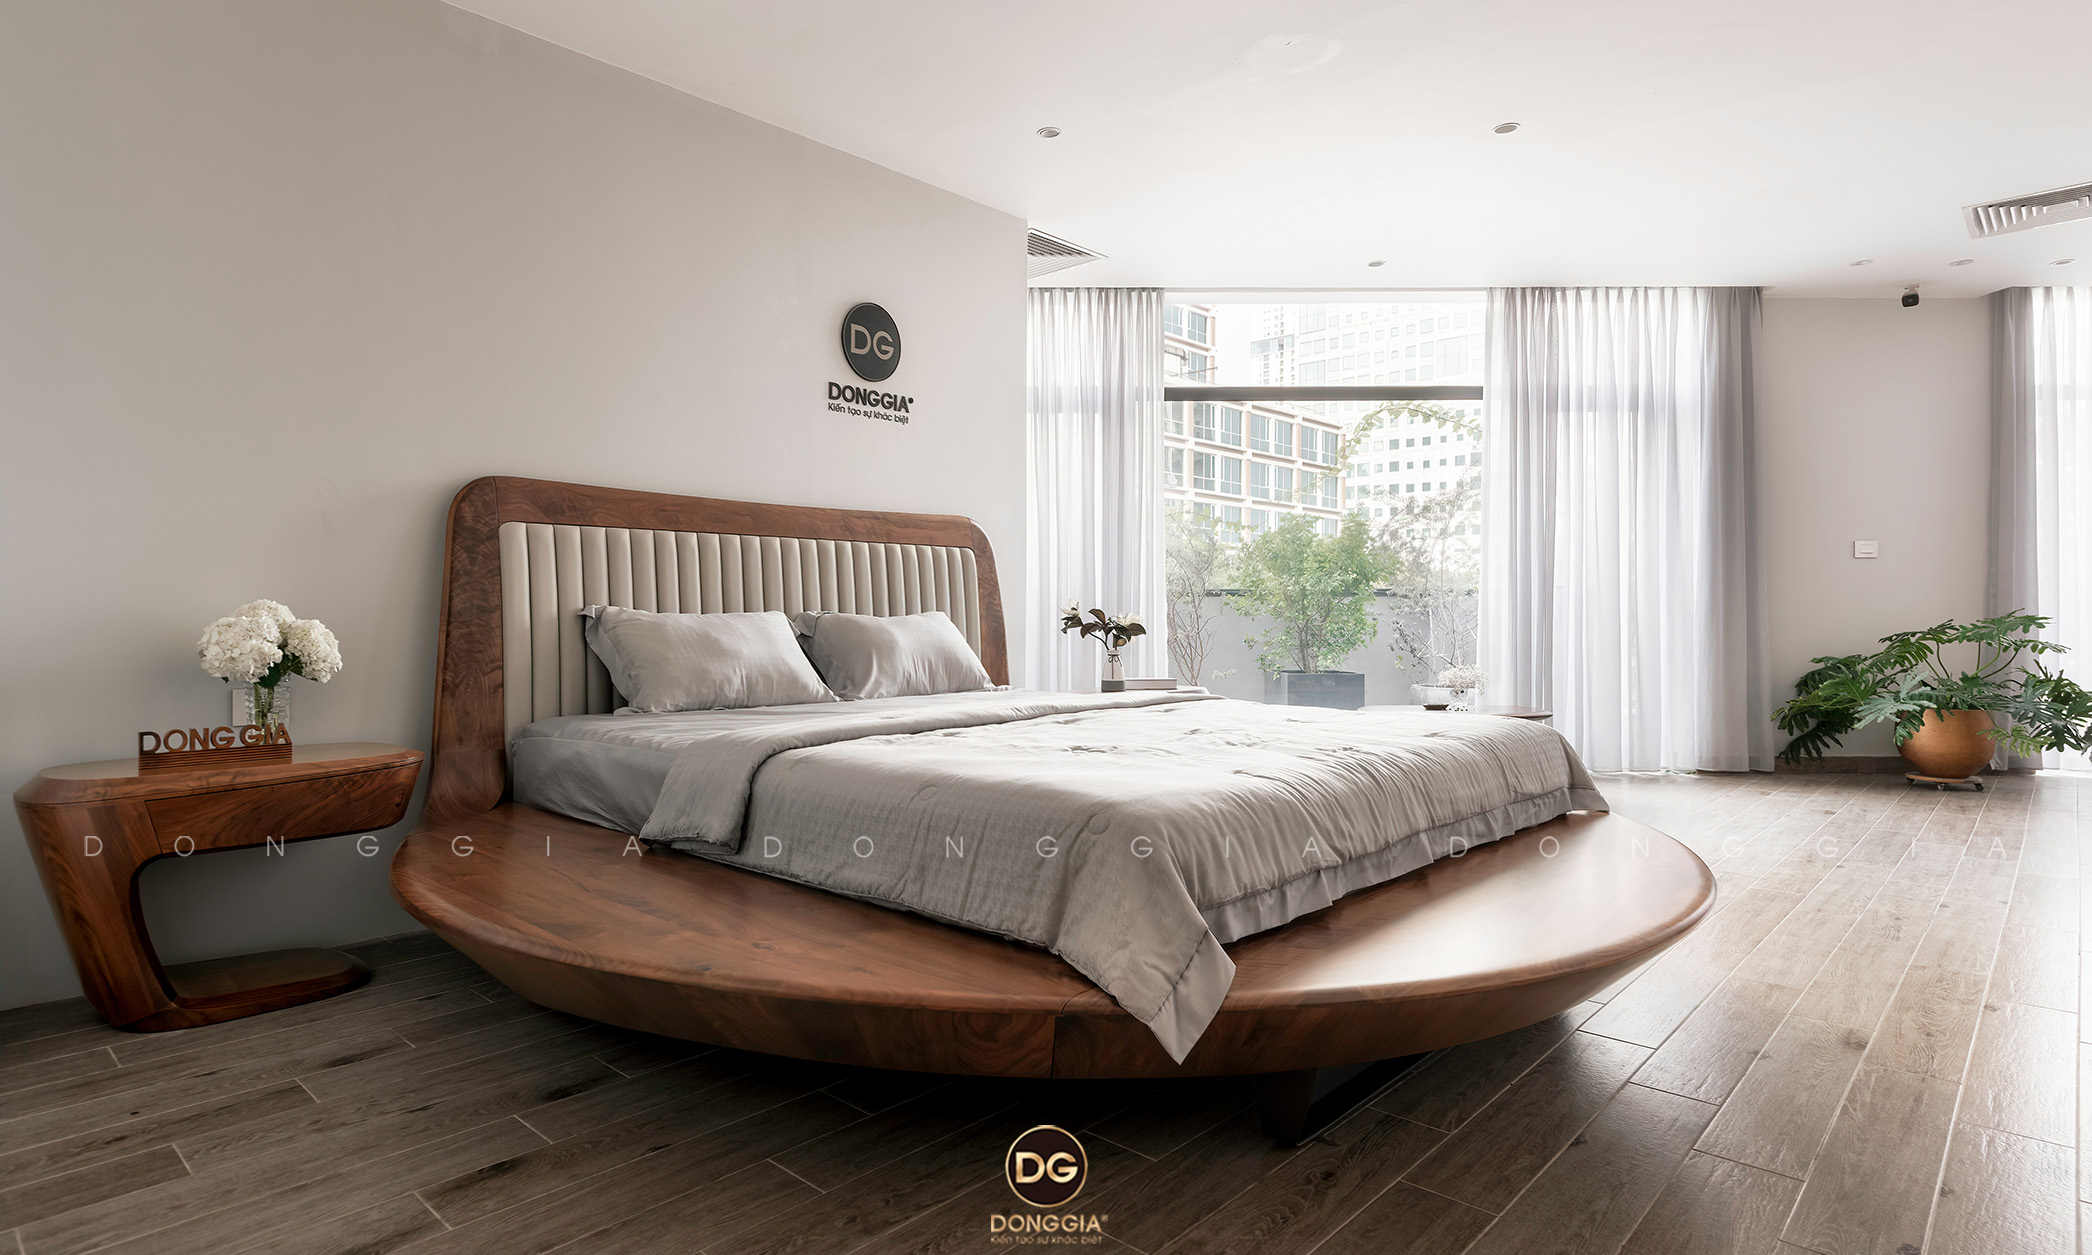 Giường ngủ gỗ Óc Chó hiện đại 2024: Được thiết kế theo phong cách hiện đại và tinh tế, giường ngủ gỗ Óc Chó sẽ mang lại cho bạn không gian ngủ đầy đủ tiện nghi và sang trọng. Hình ảnh này sẽ khiến bạn nhận ra sự đẳng cấp và chất lượng của sản phẩm này.